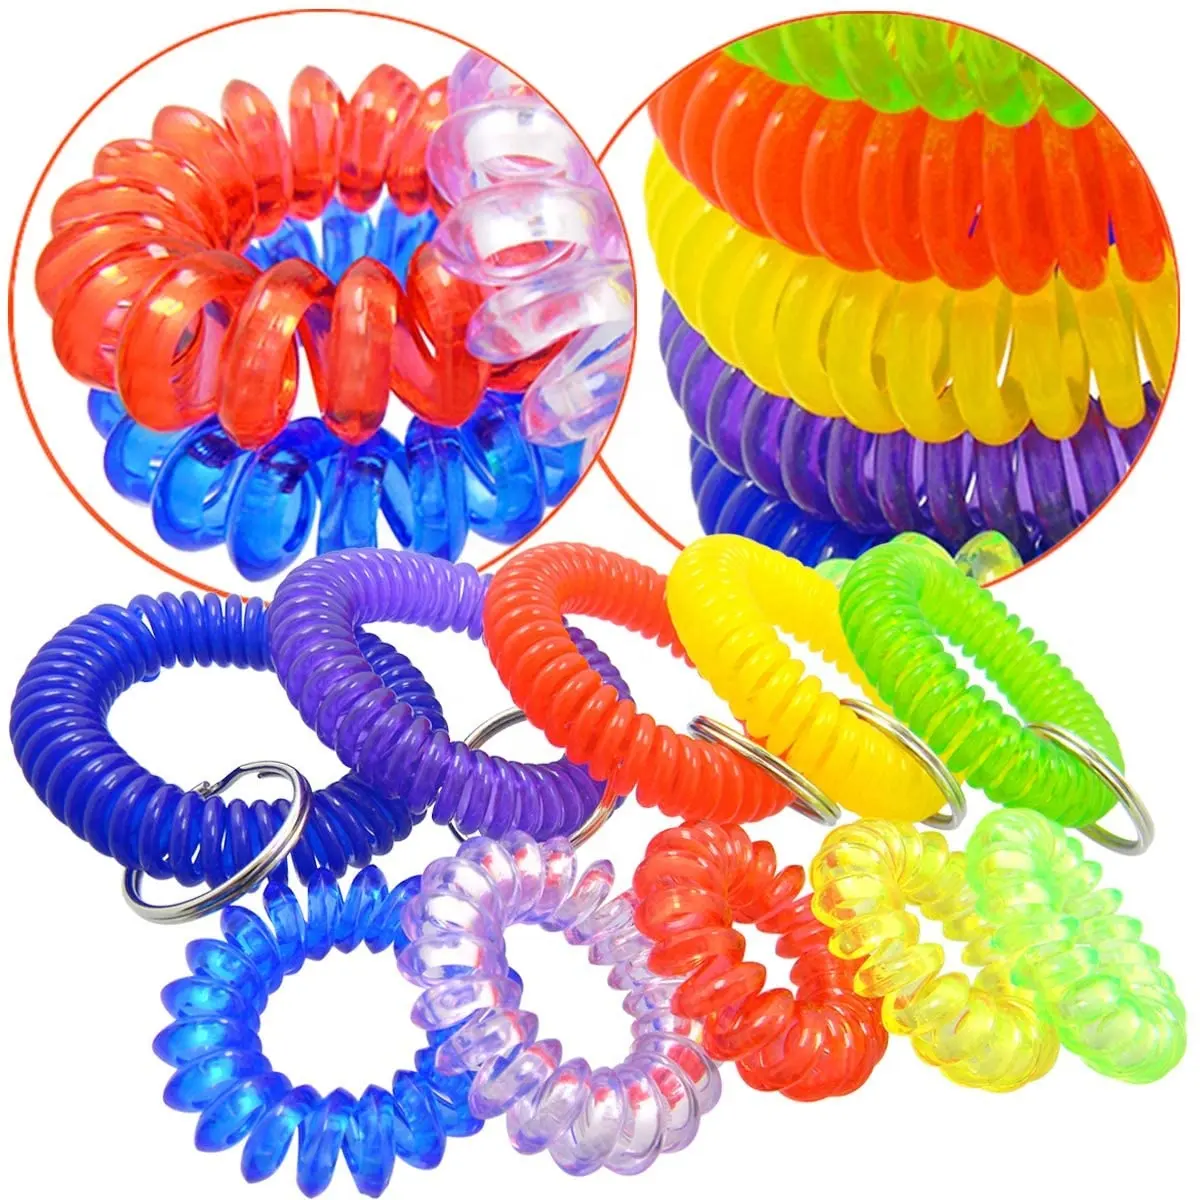 Chaveiro de plástico flexível, chaveiro espiral de plástico colorido